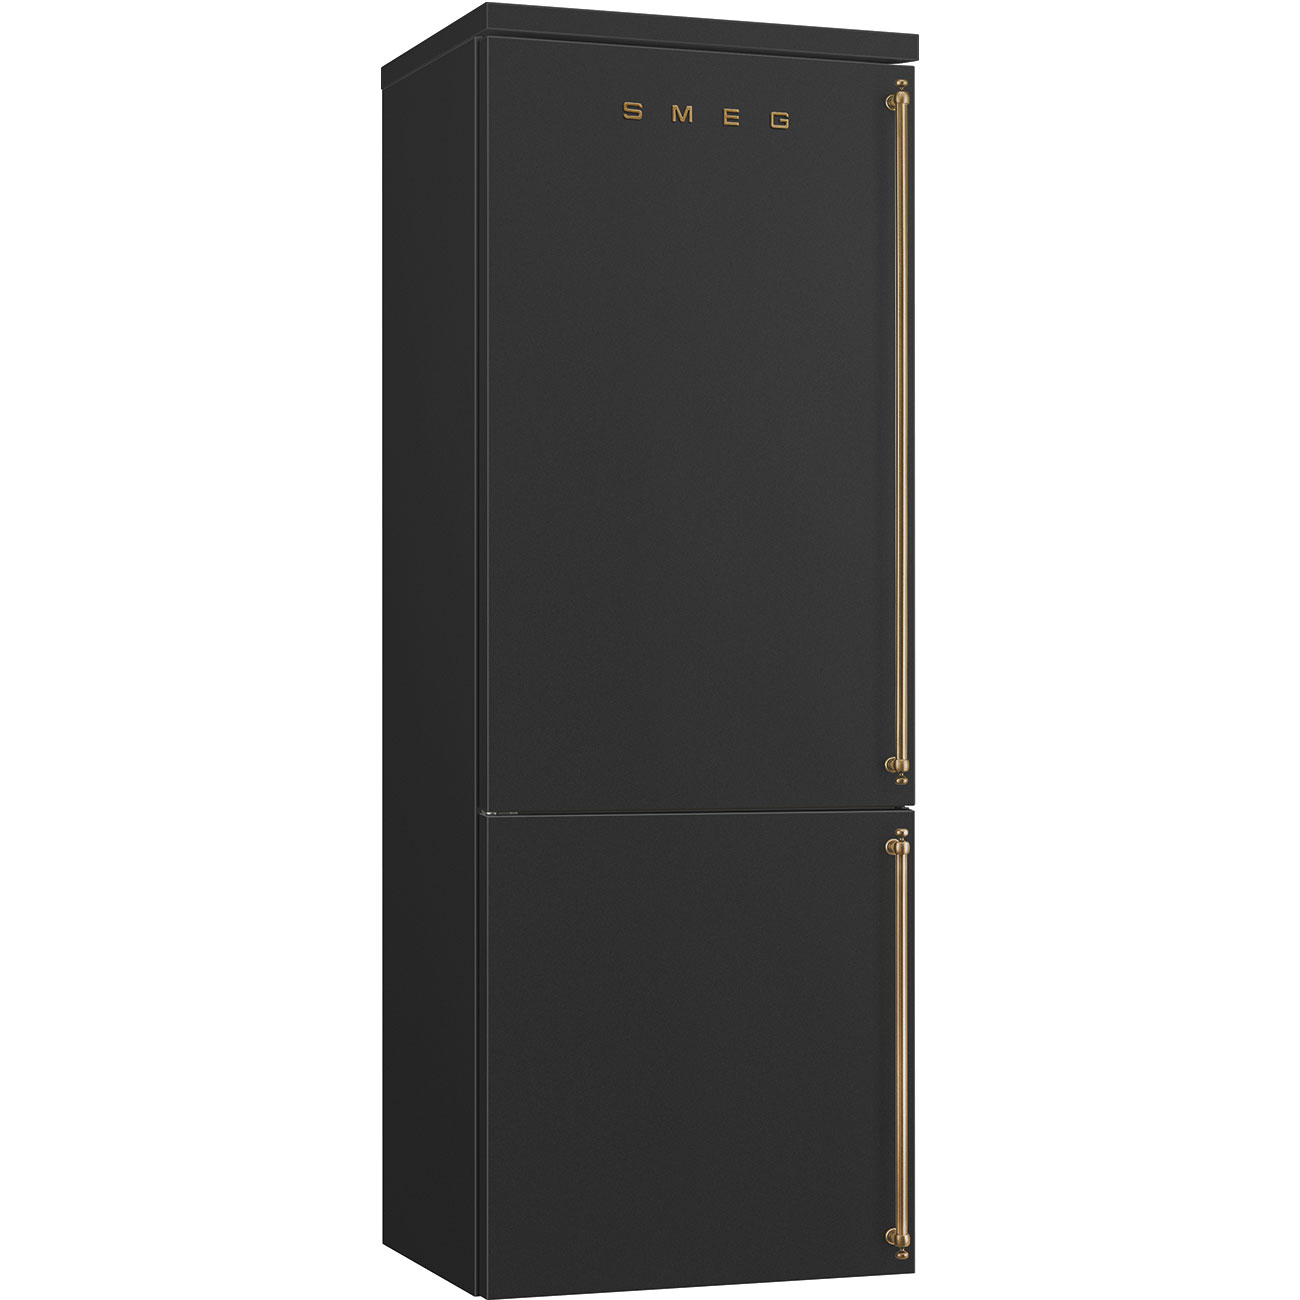 SMEG FA8005LAO5 Отдельностоящий холодильник, 70 см, антрацит, фурнитура латунная, петли слева